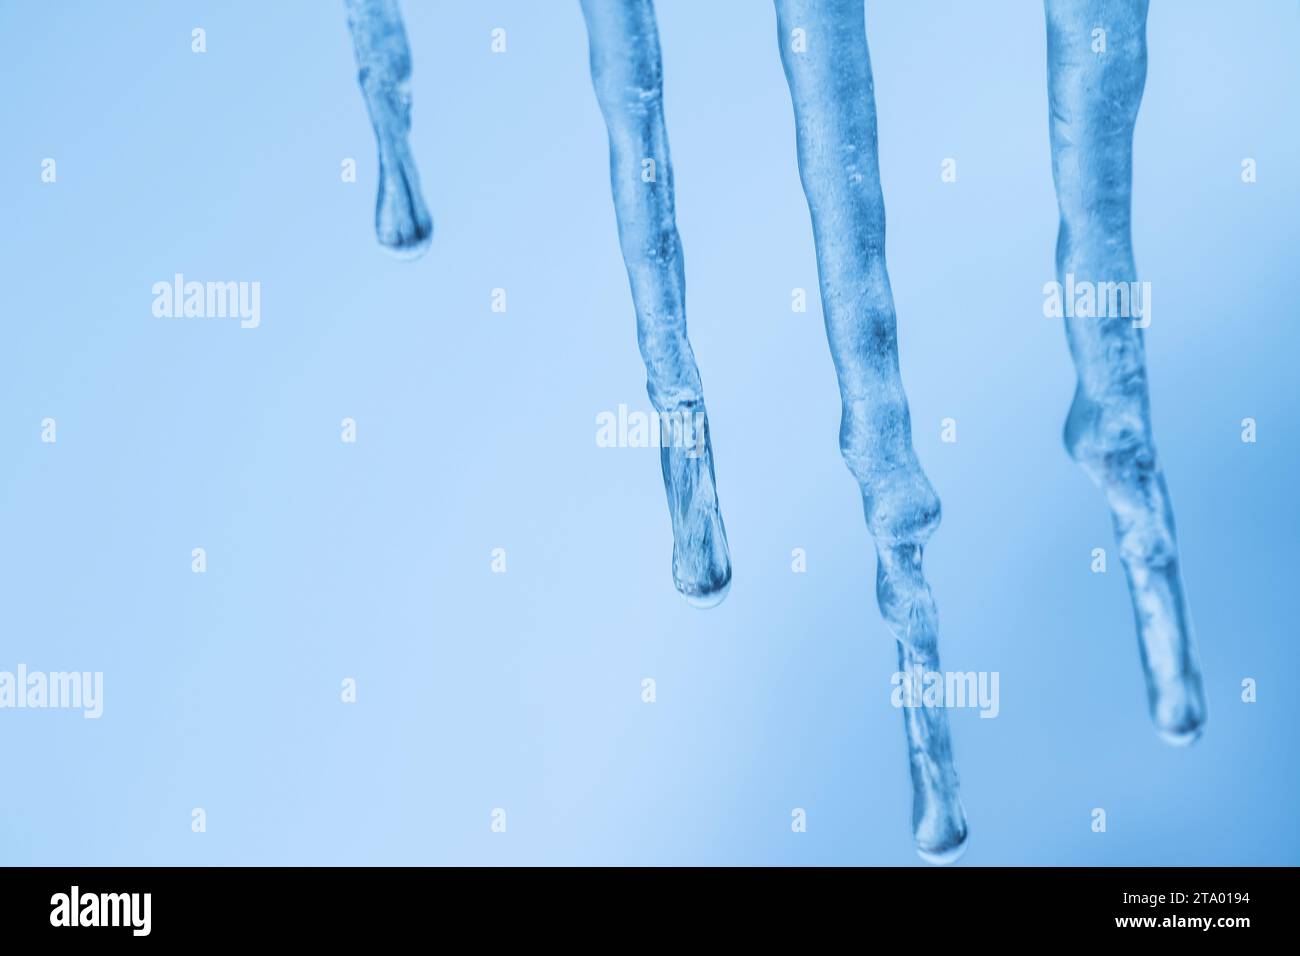 Ein Haufen echter Eiszapfen im Fokus von Eistropfen, Eisstalaktiten, Eisformationen an einem gefrorenen Tag Stockfoto